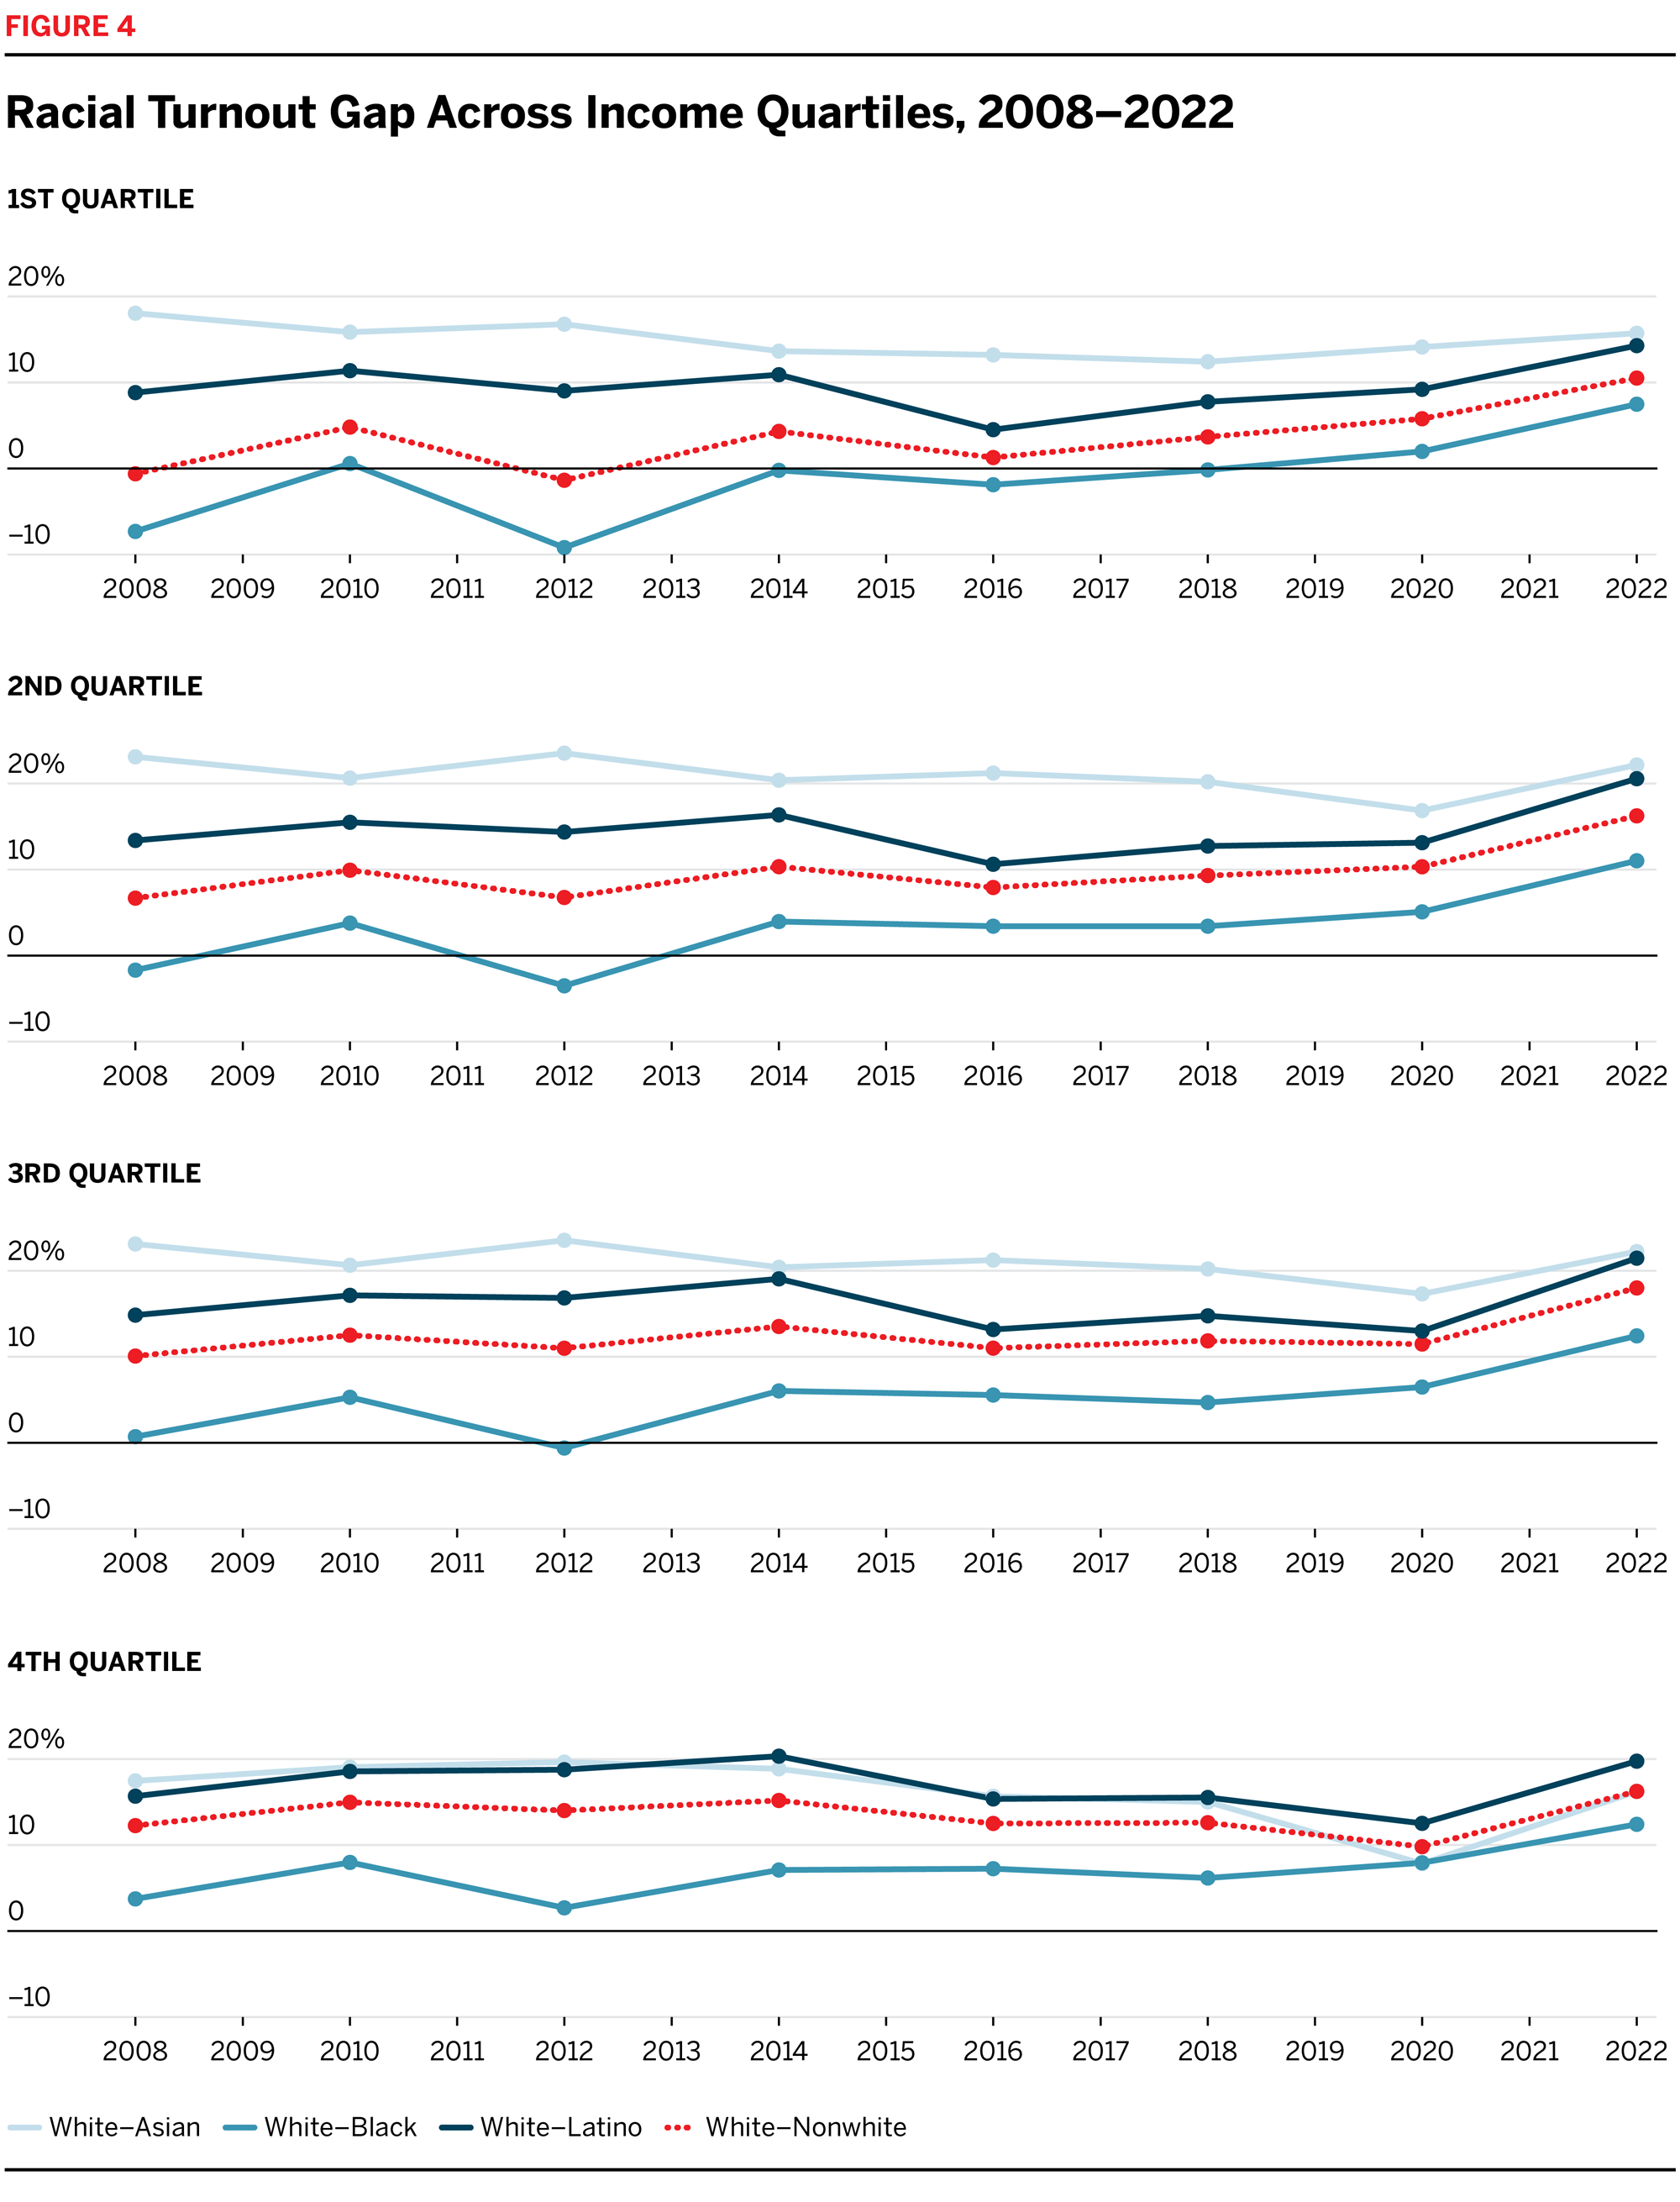 Racial Turnout Gap Across Income Quartiles, 2008-2022 line chart